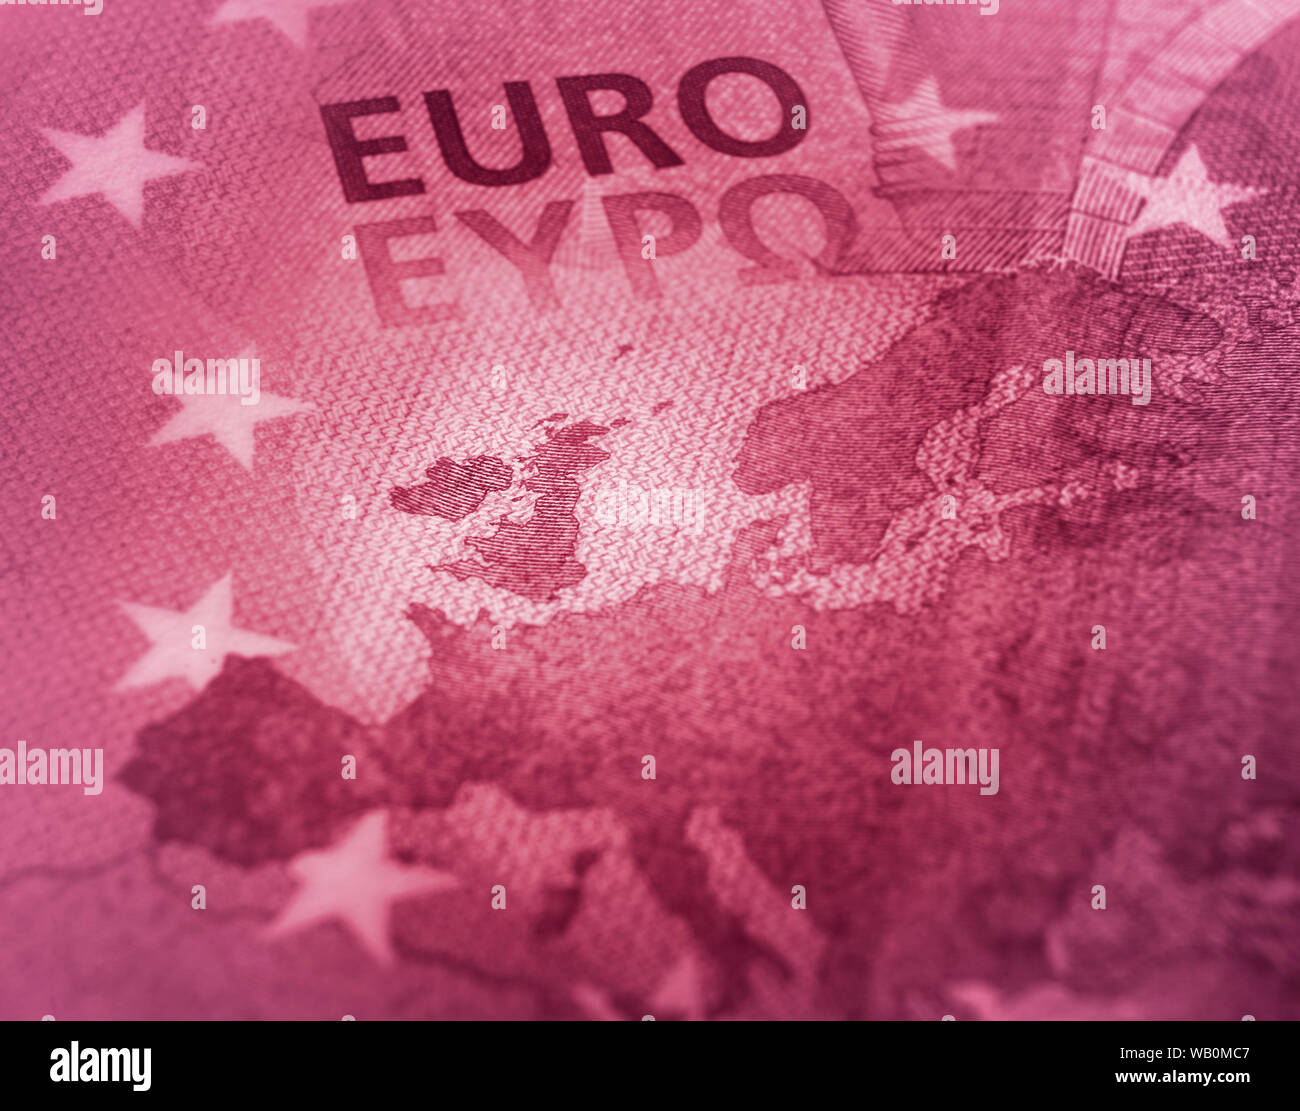 Disegno astratto. Unfocused Euro bill close up dettaglio della mappa dell'Europa con il focus sulla Gran Bretagna. Il colore rosso di tono. Foto Stock